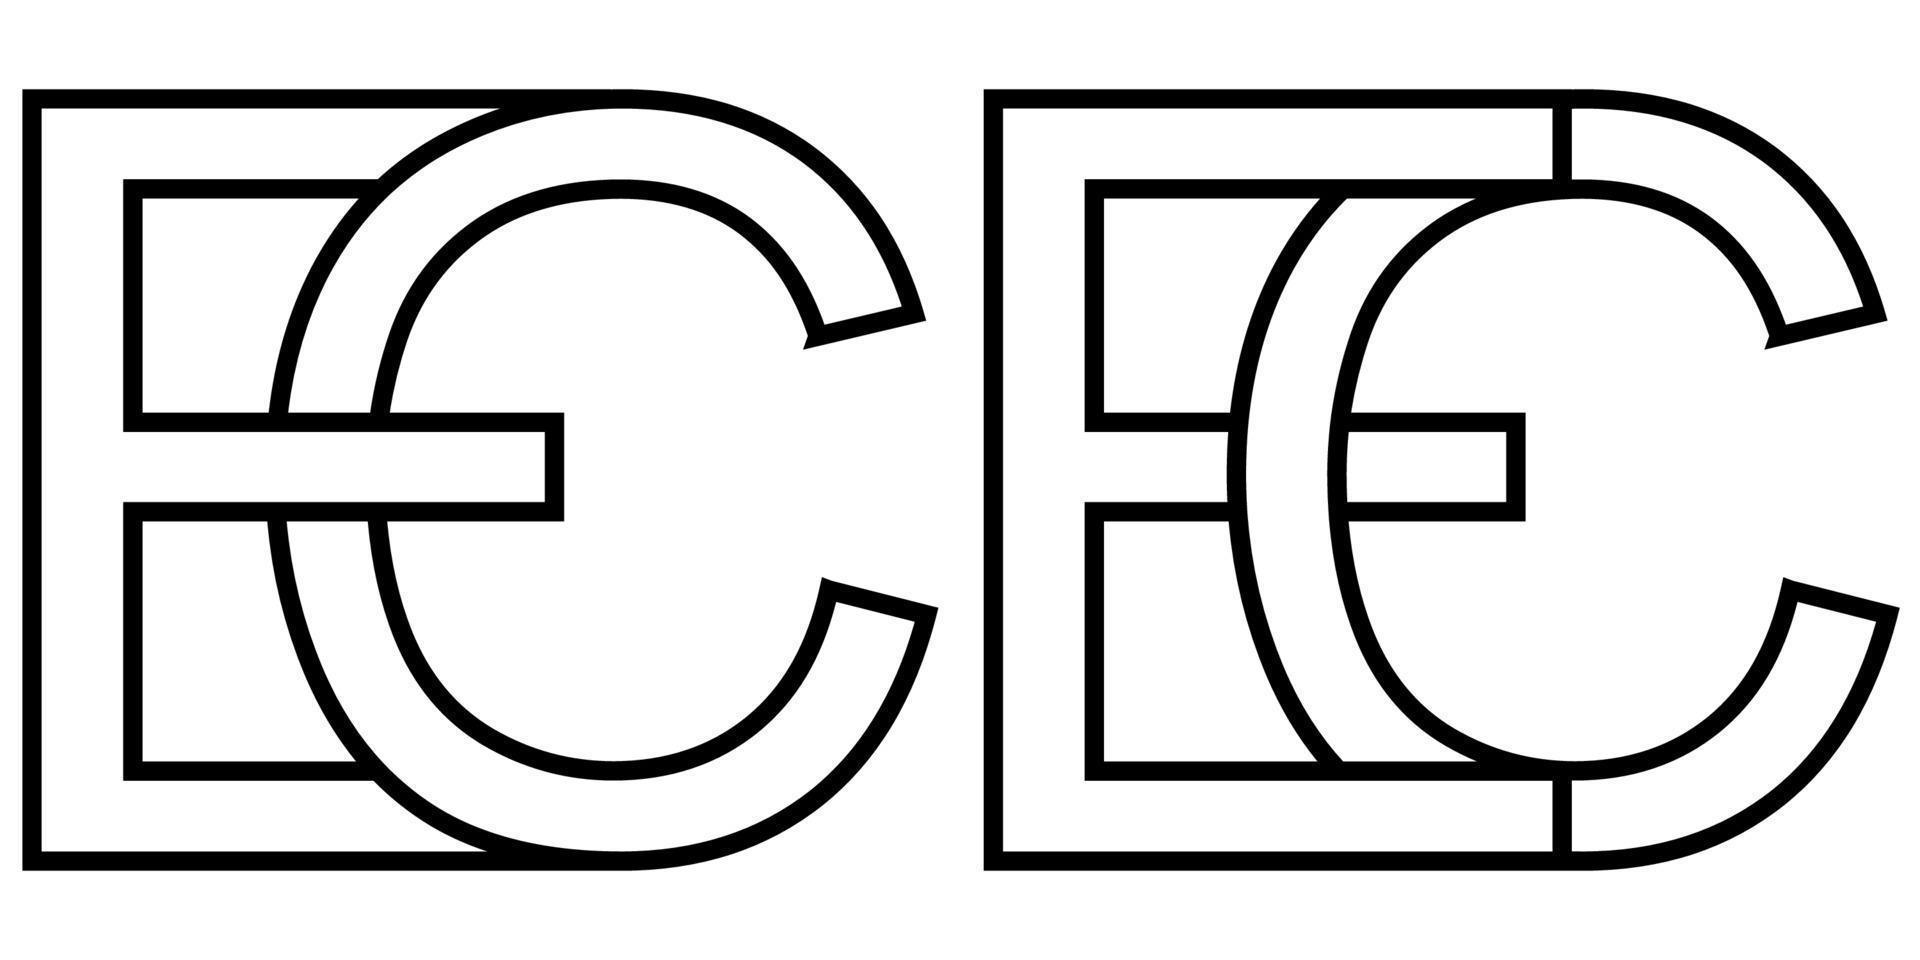 Logo ce ec Symbol Zeichen zwei interlaced Briefe c e, Vektor Logo ce ec zuerst Hauptstadt Briefe Muster Alphabet c e